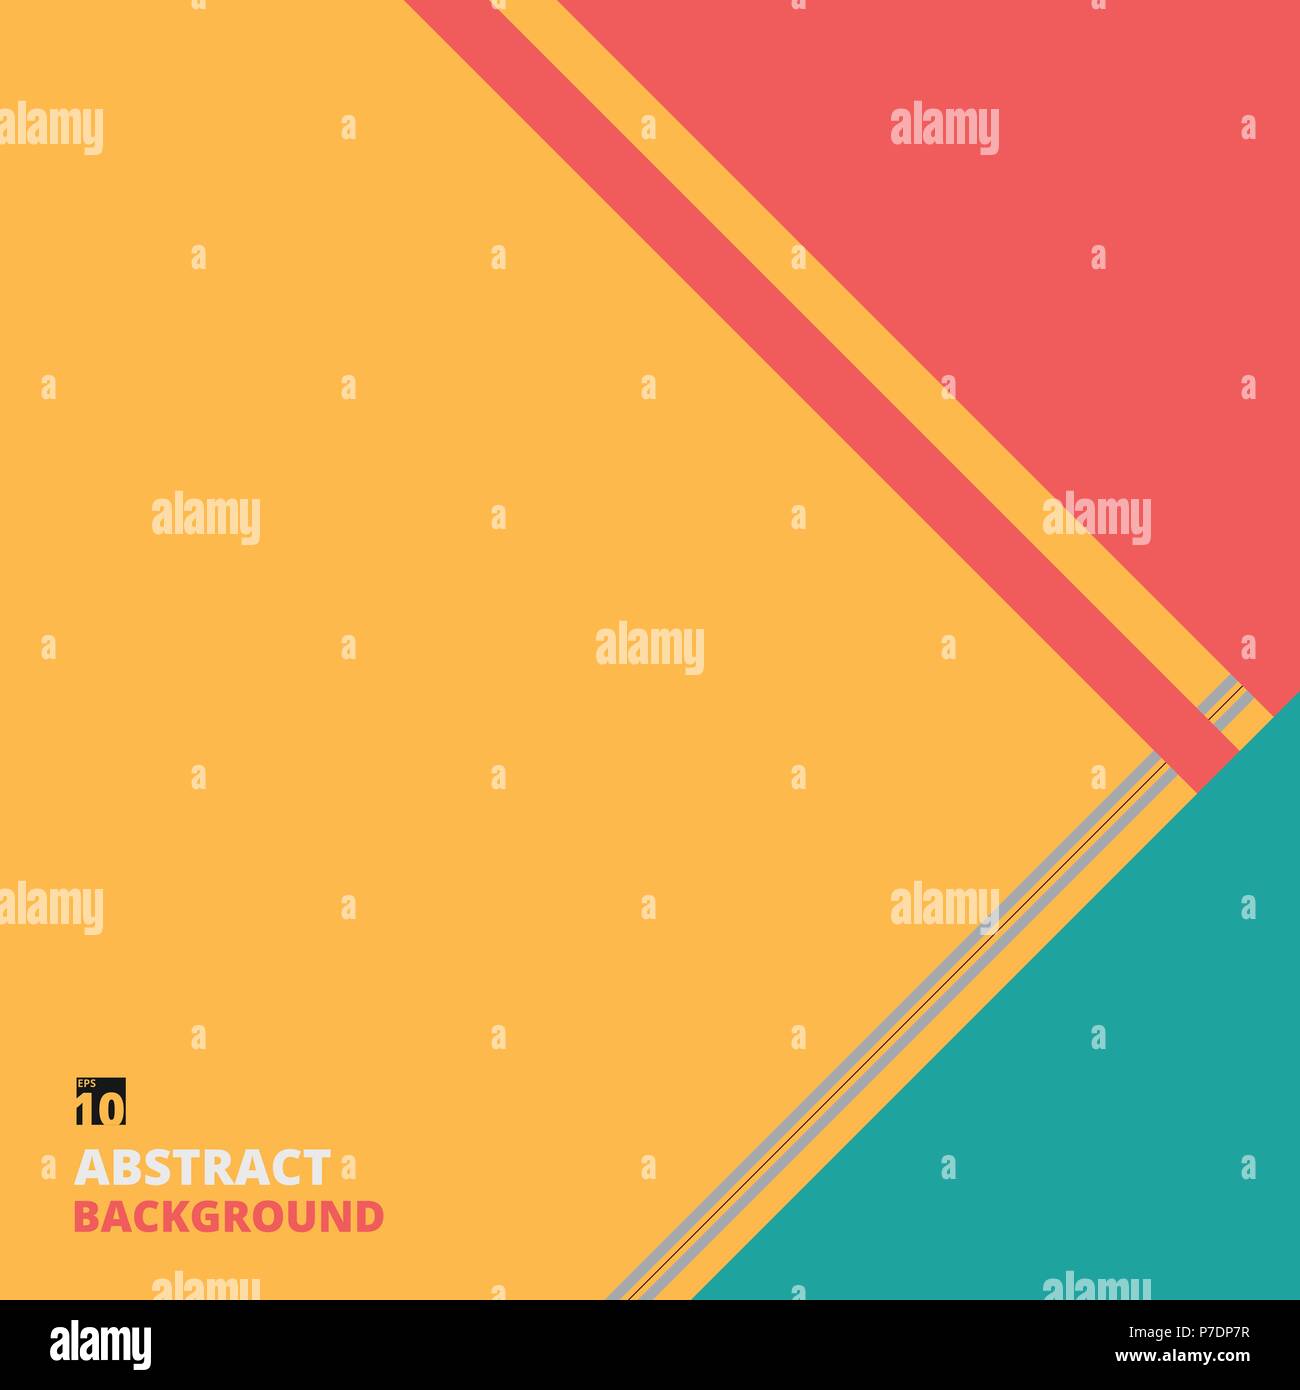 Résumé d'un motif de fond coloré avec copie espace, illustration vector eps10 Illustration de Vecteur